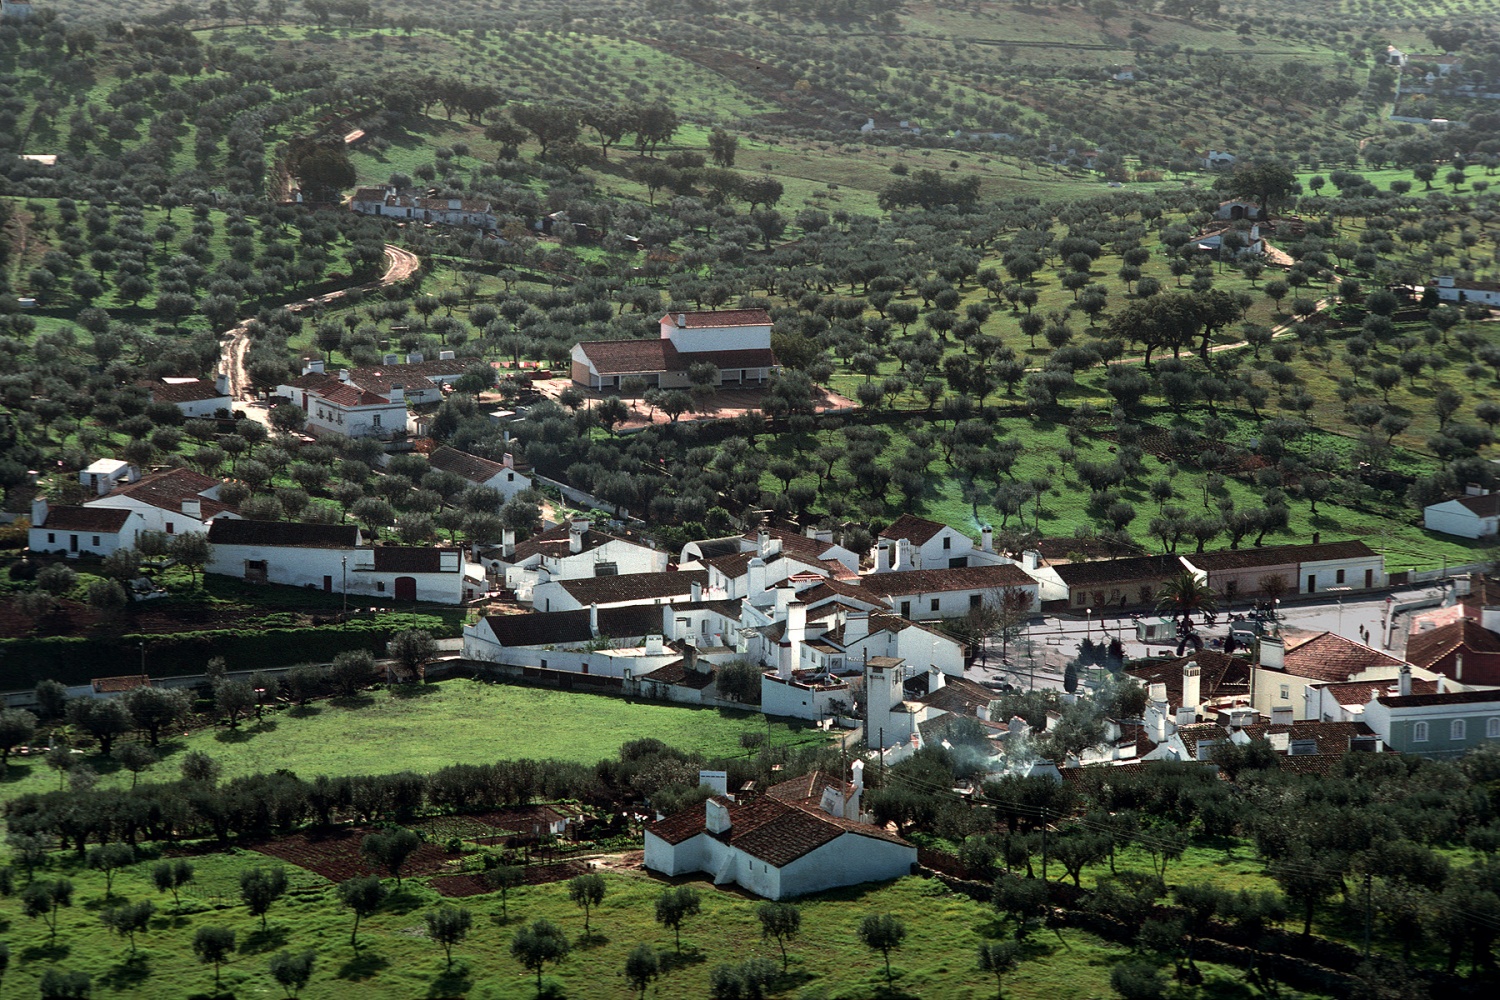 bill-hocker-village-near-evora-portugal-1983